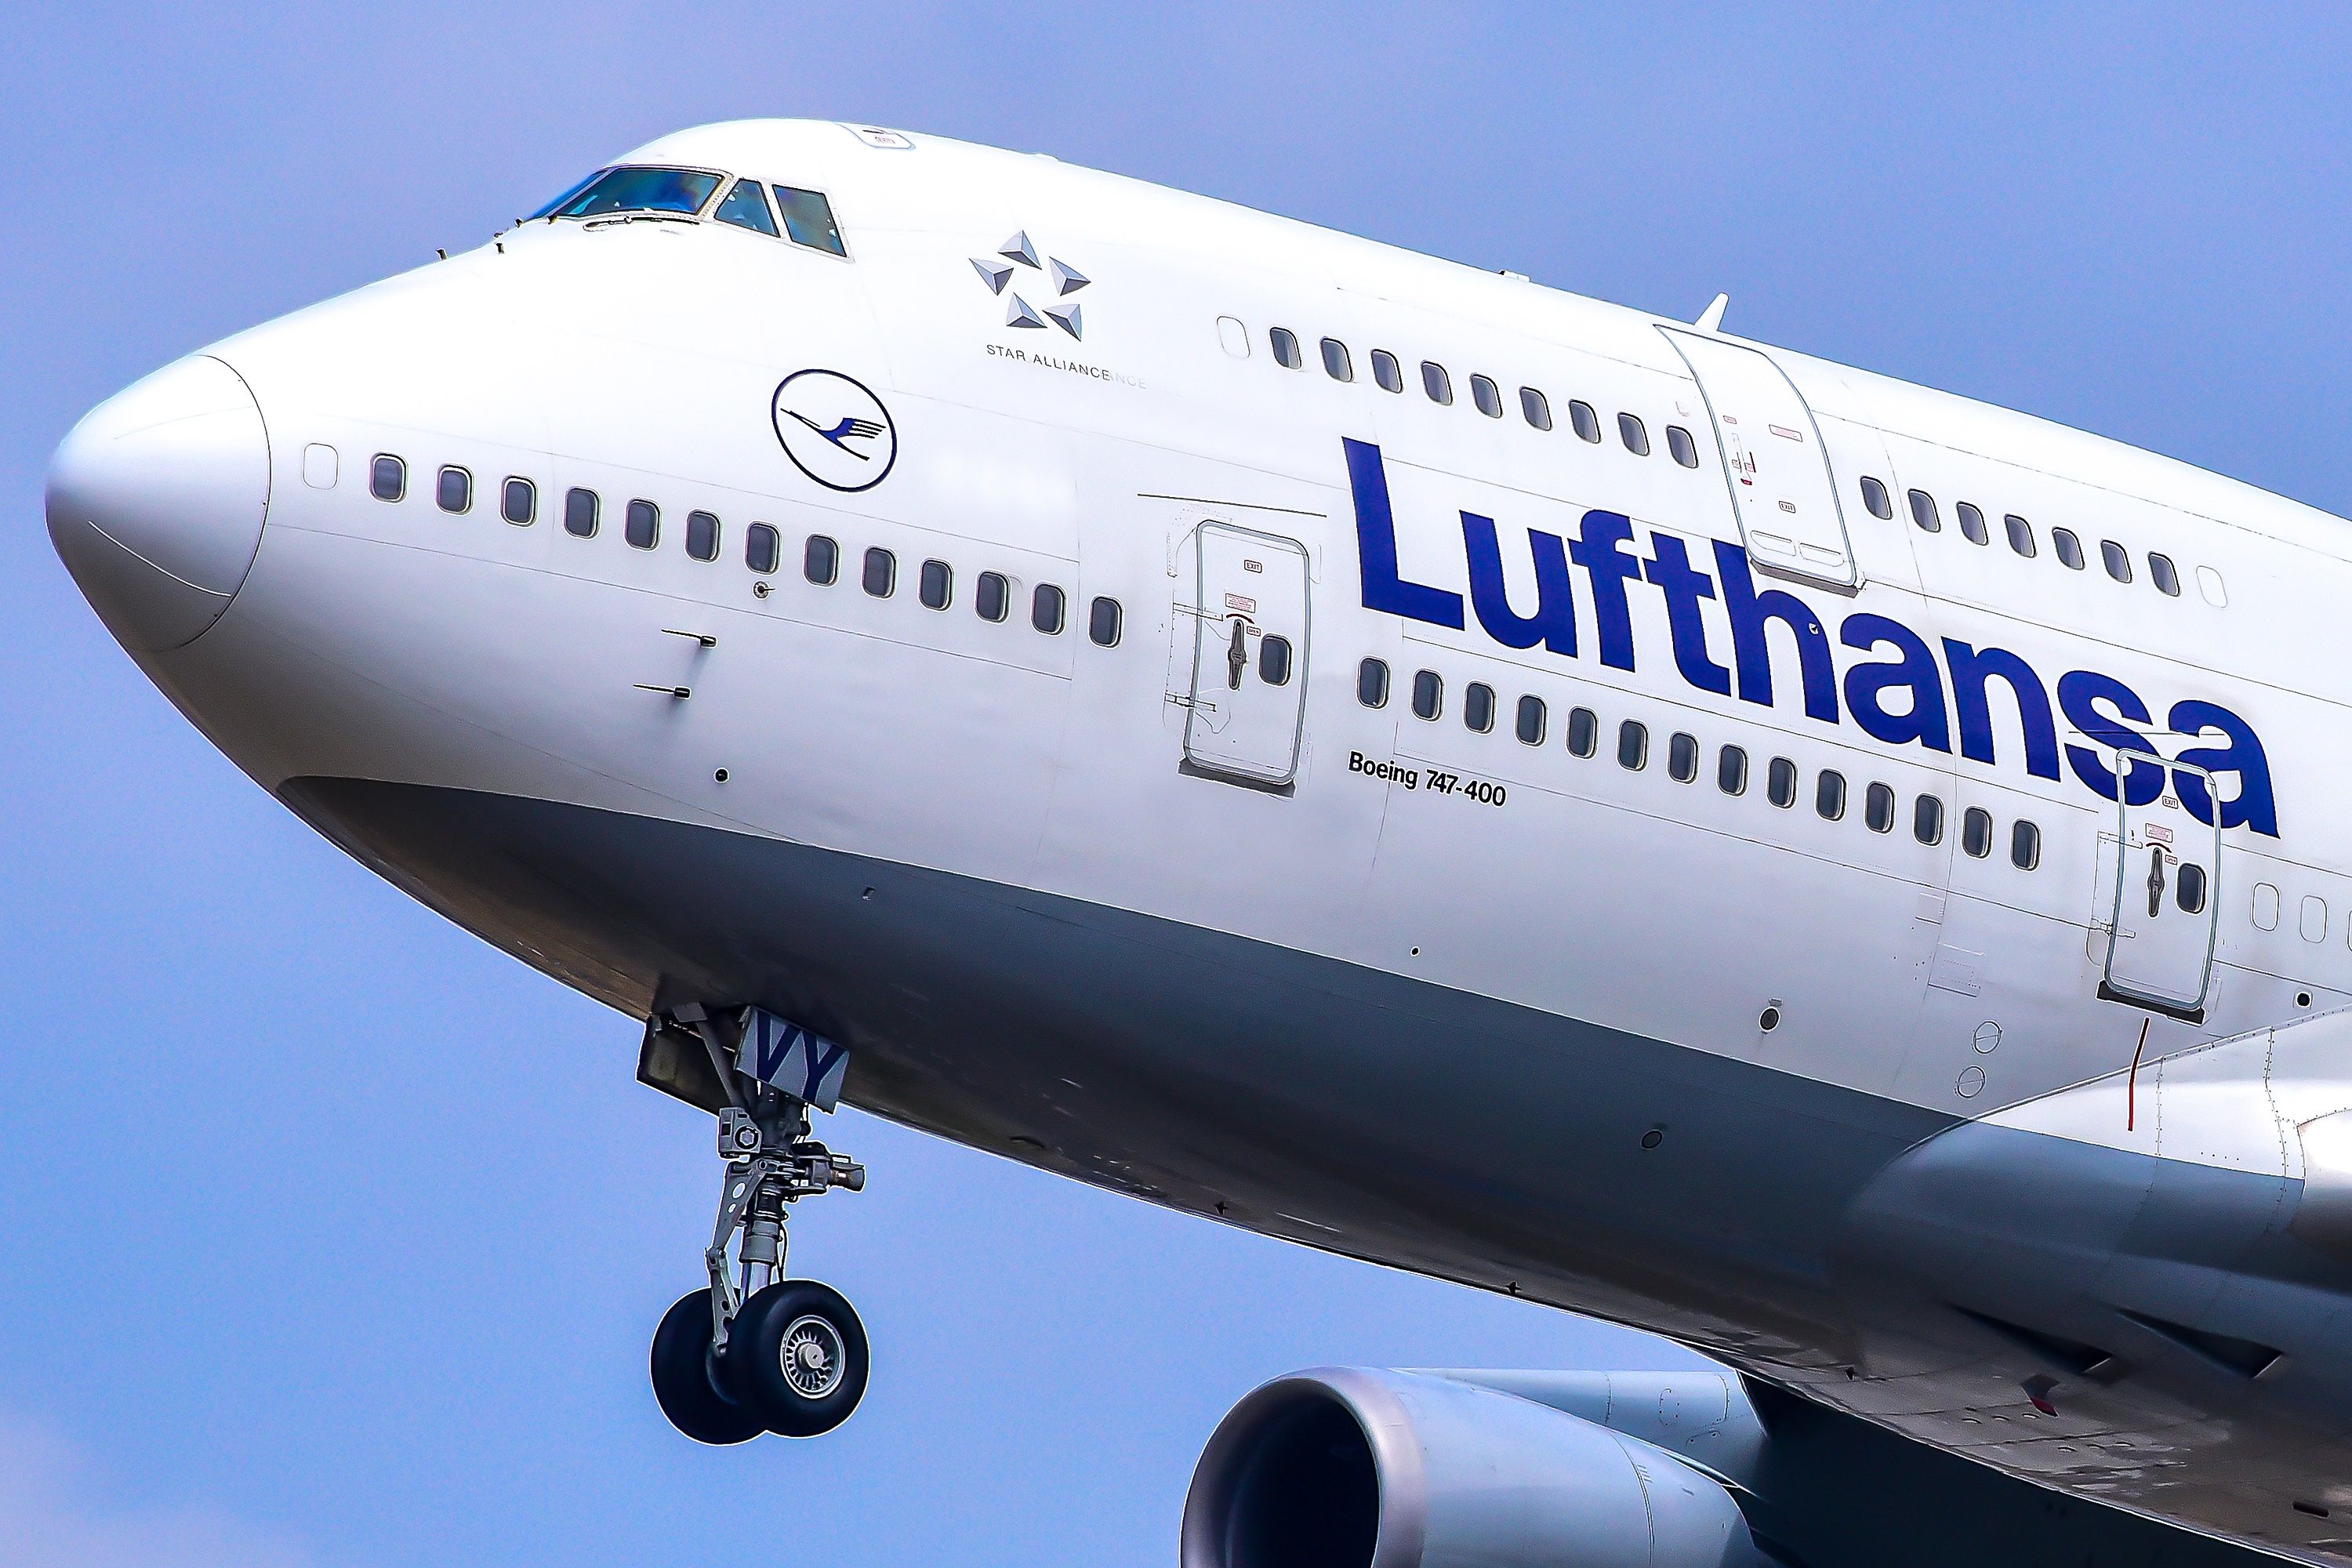 Lufthansa 747-400 landing